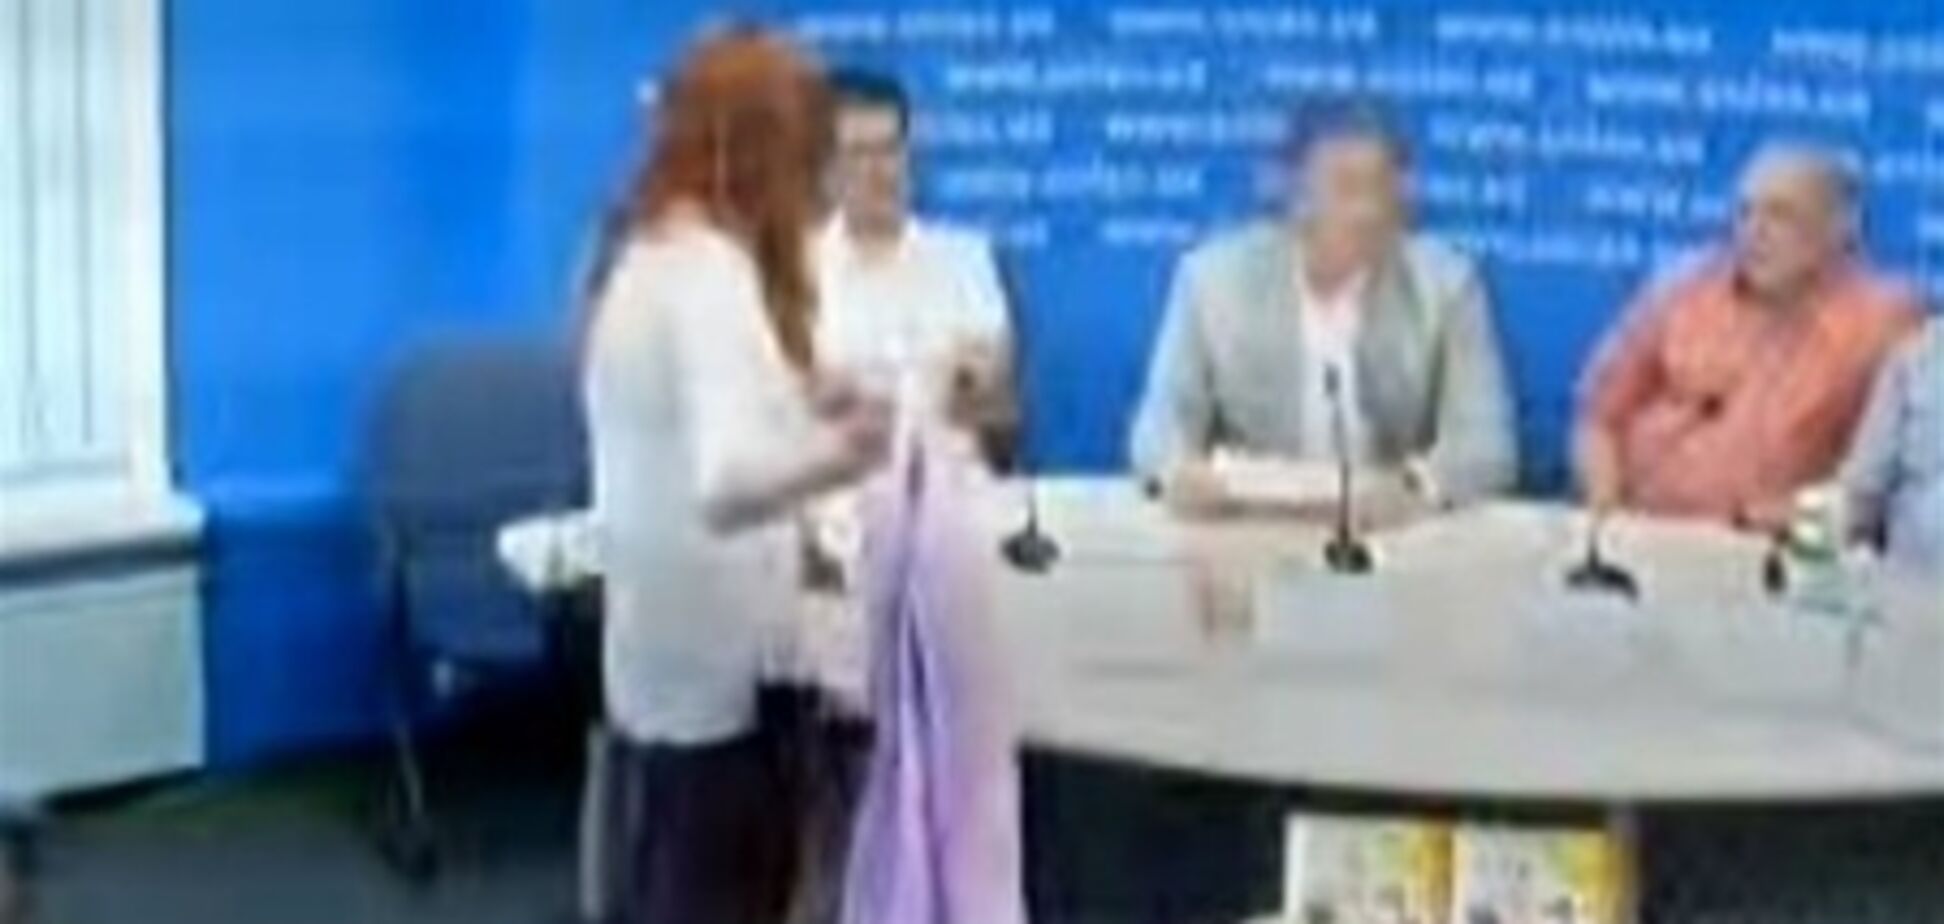 В Колесниченко бросили смирительную рубашку